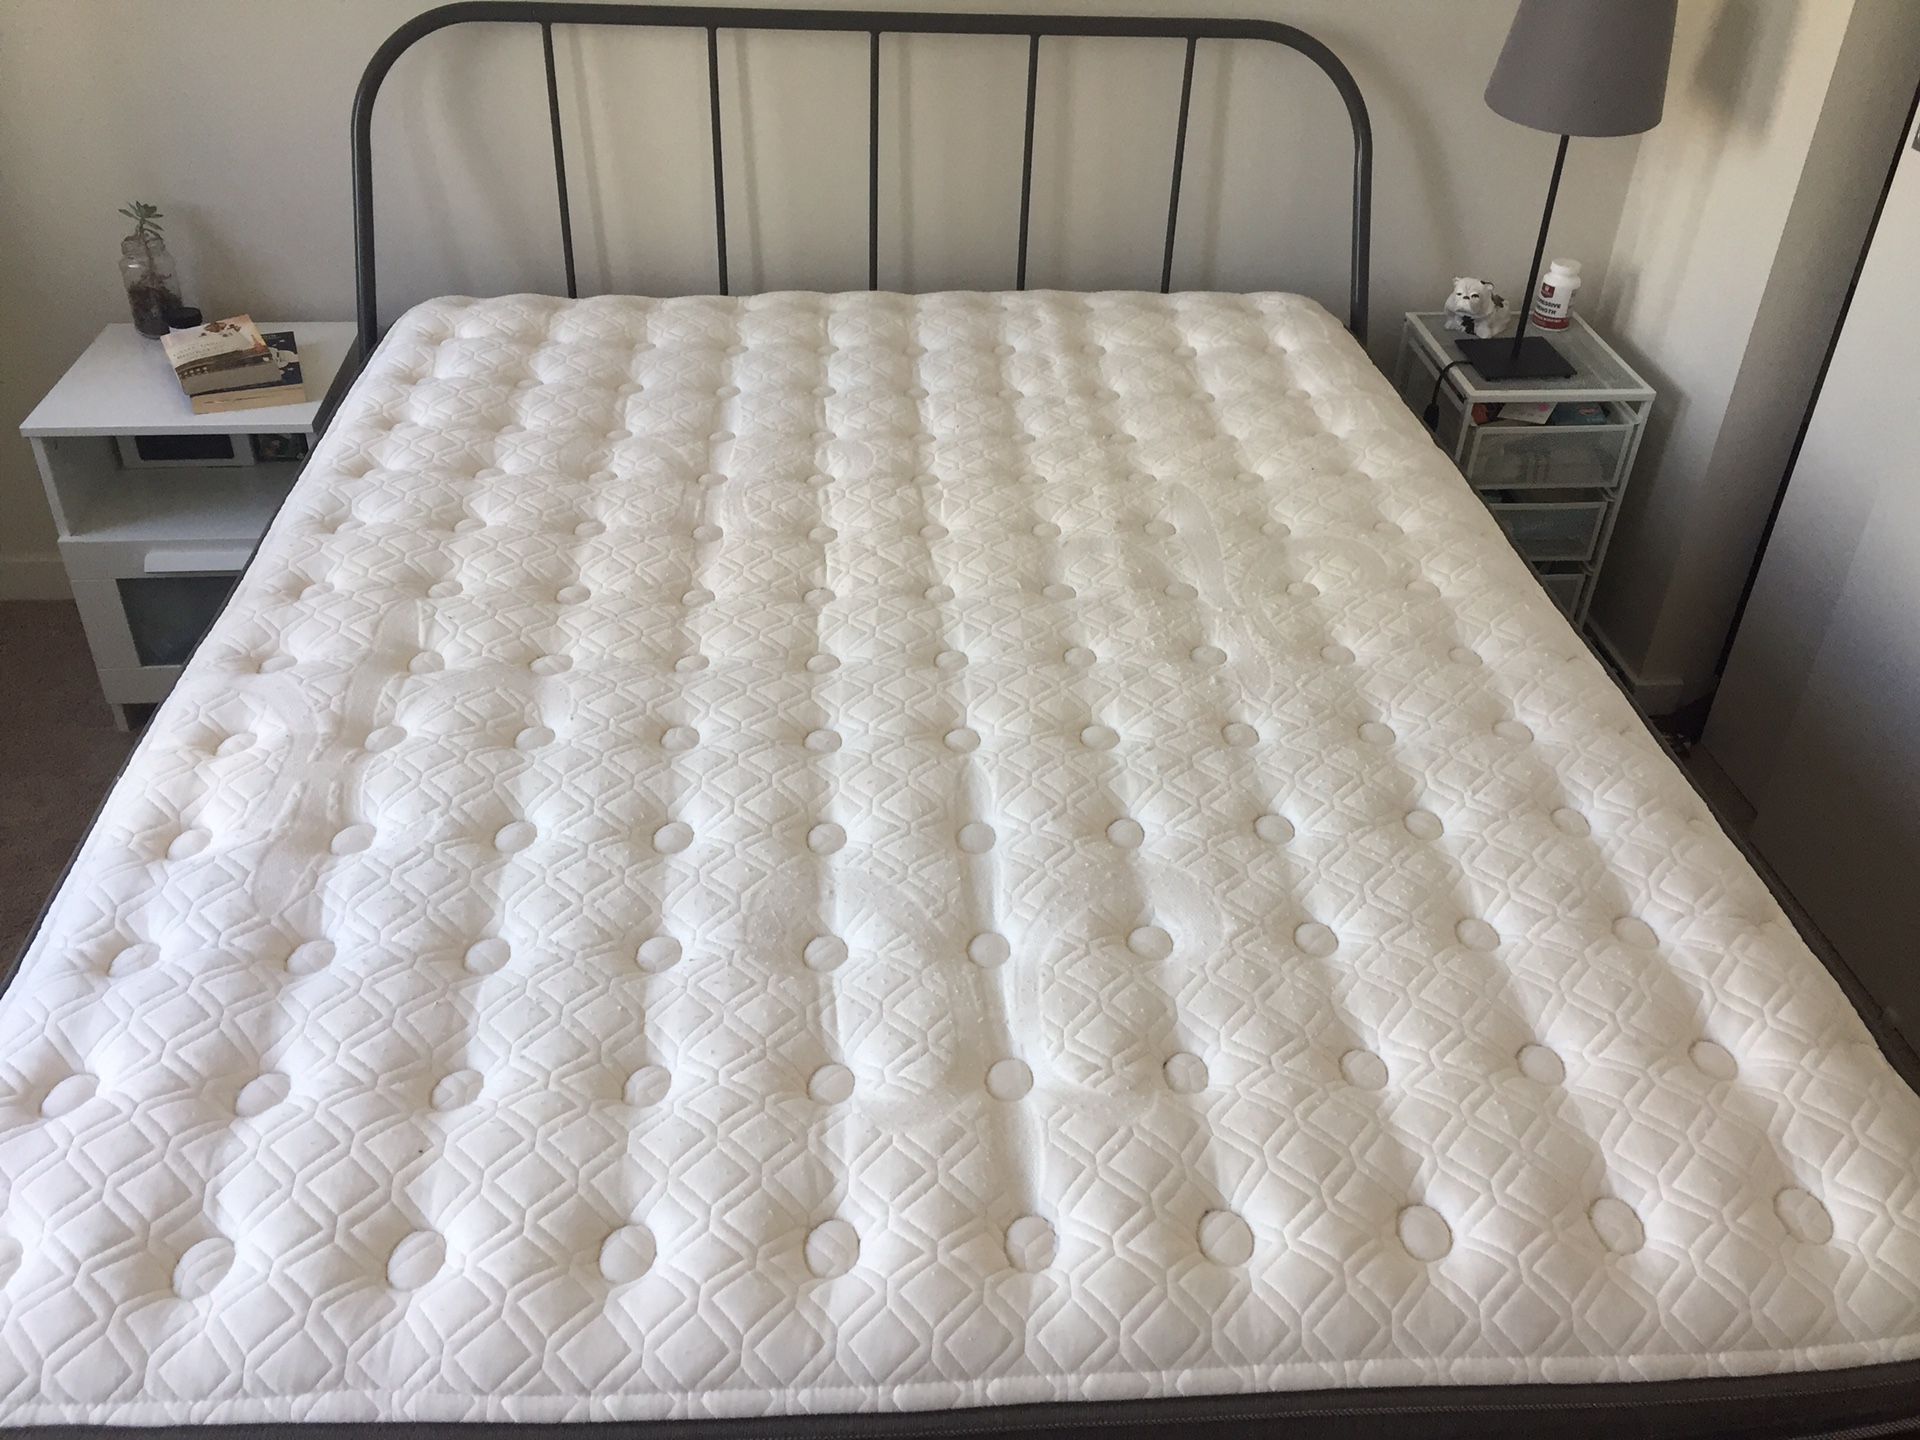 Queen Stearns & Foster mattress & Bed frame